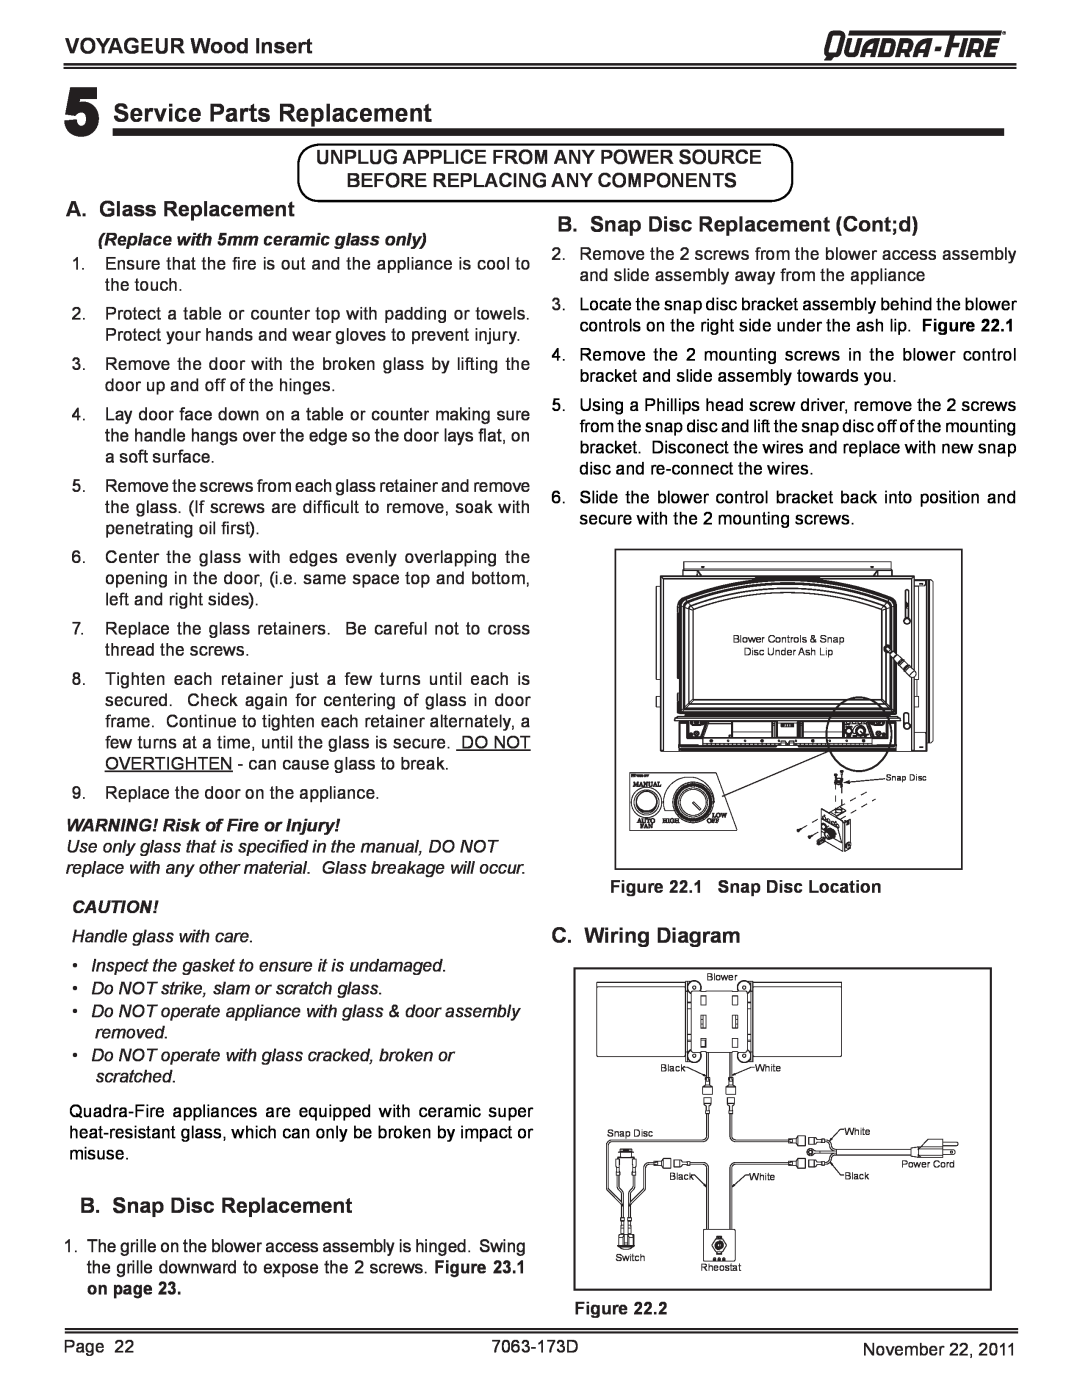 Quadra-Fire VOYAGEUR-PMH 5Service Parts Replacement, A. Glass Replacement, B.Snap Disc Replacement Cont;d, Figure 